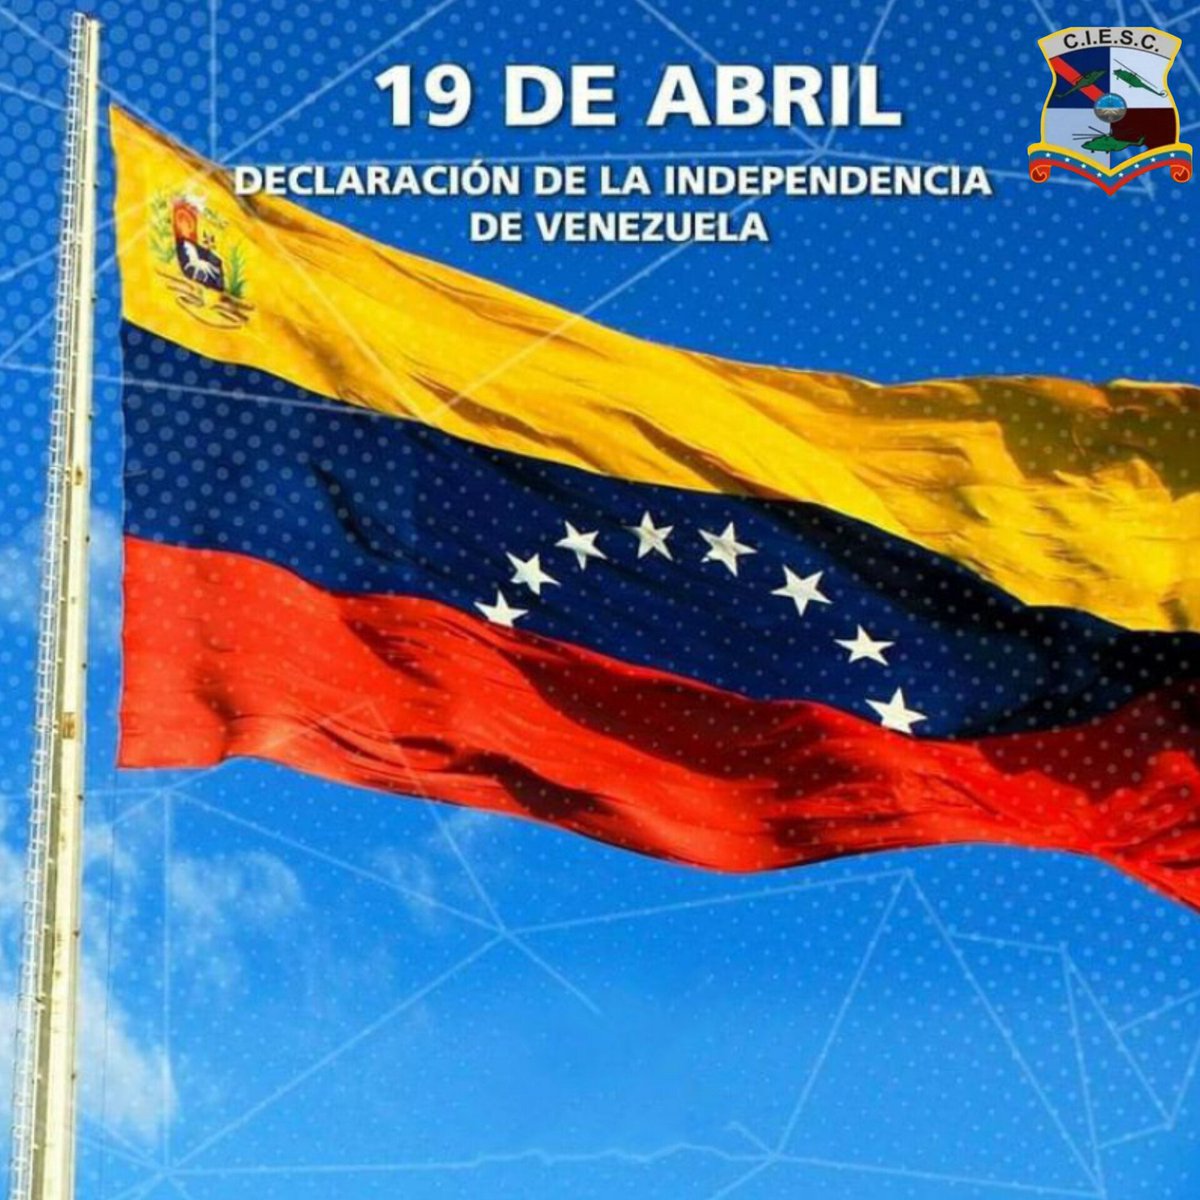 🇻🇪#HistoriaDeVenezuela ll desde 1810 cada 19 de abril se celebra la Proclamación de la Independencia de #Venezuela, esto se dió por el apoyo del pueblo, las fuerzas armadas y la sociedad en general , instalando la Junta Suprema de Caracas, y el Primer Congreso de Venezuela.